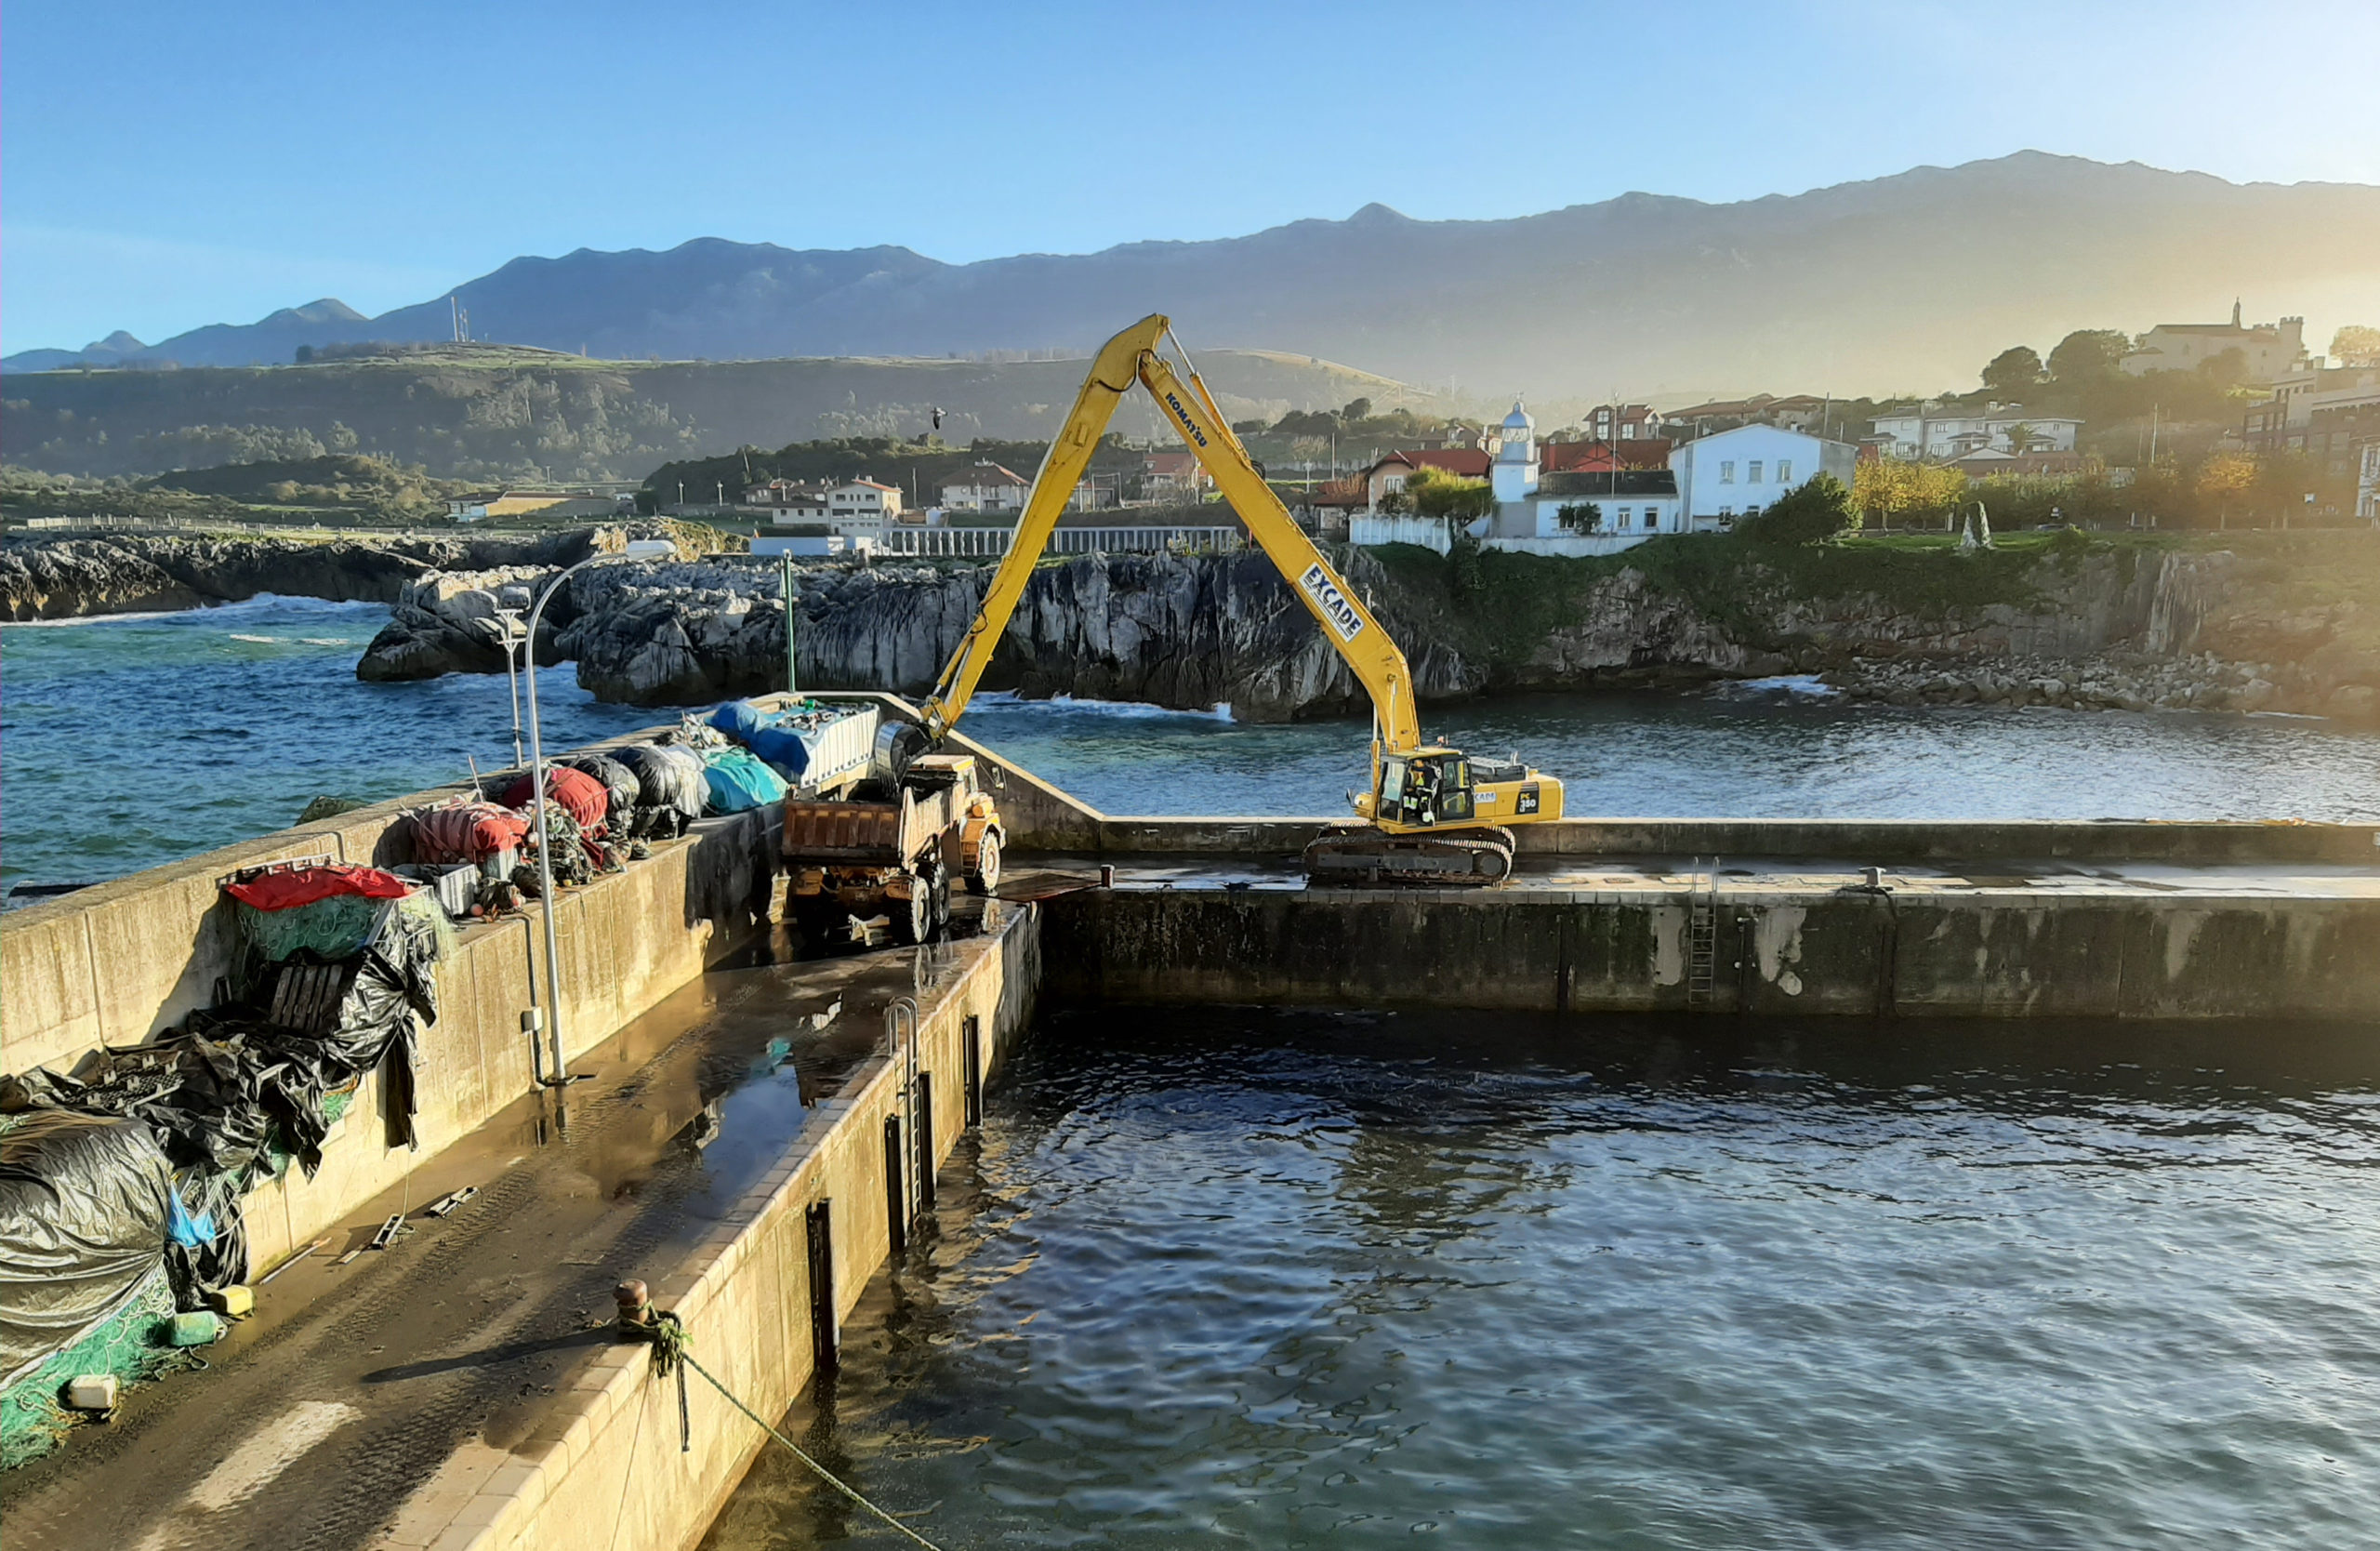 Excade realizada un dragado del puerto de Llanes con excavadora de largo alcance